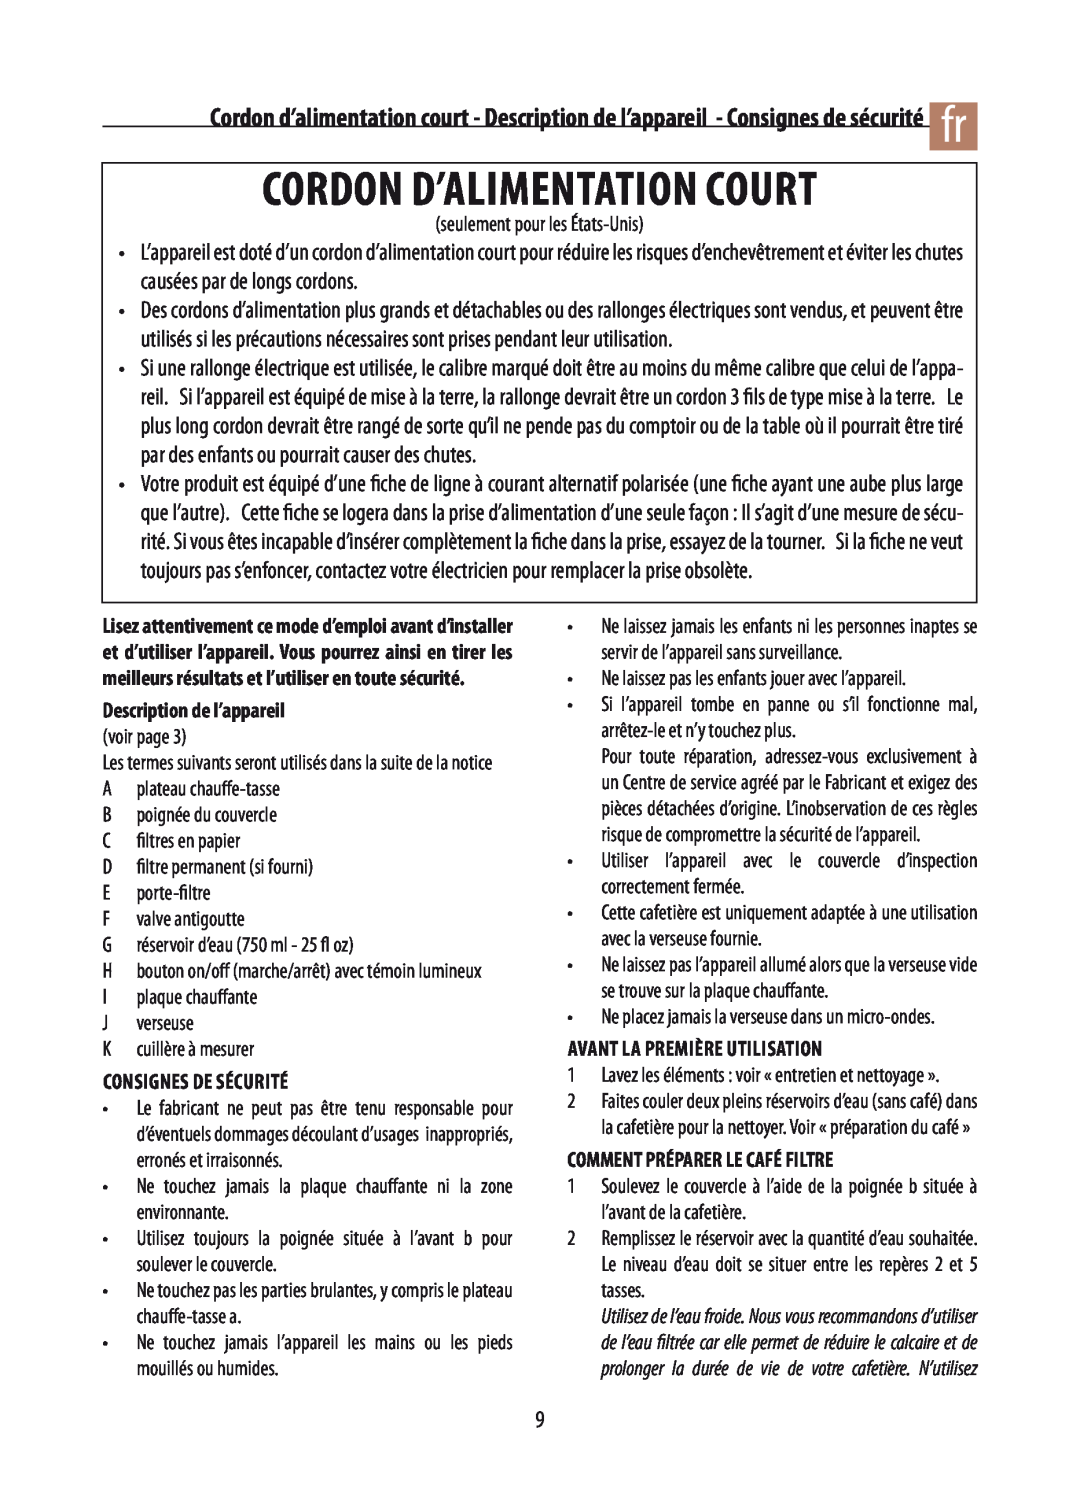 DeLonghi DCM02 manual Cordon D’Alimentation Court, Description de l’appareil, Consignes de Sécurité 